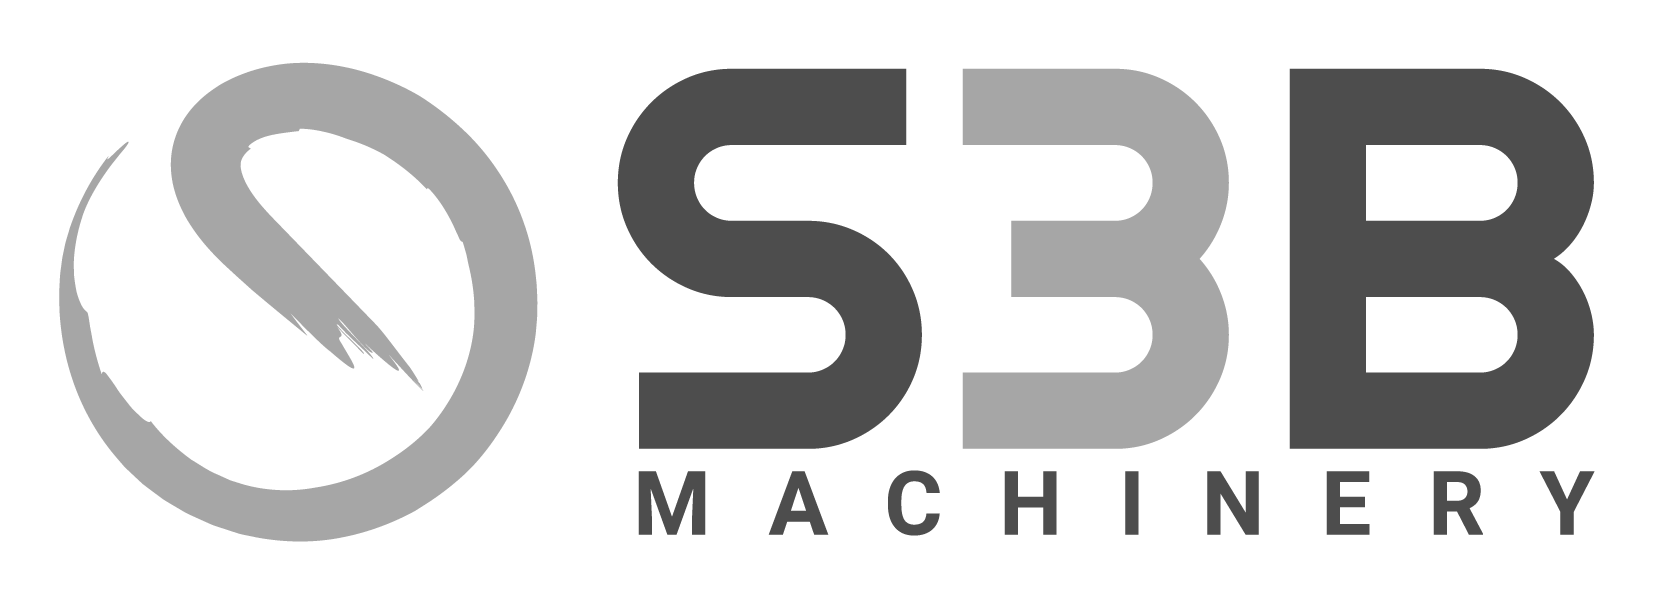 S3B Machinery